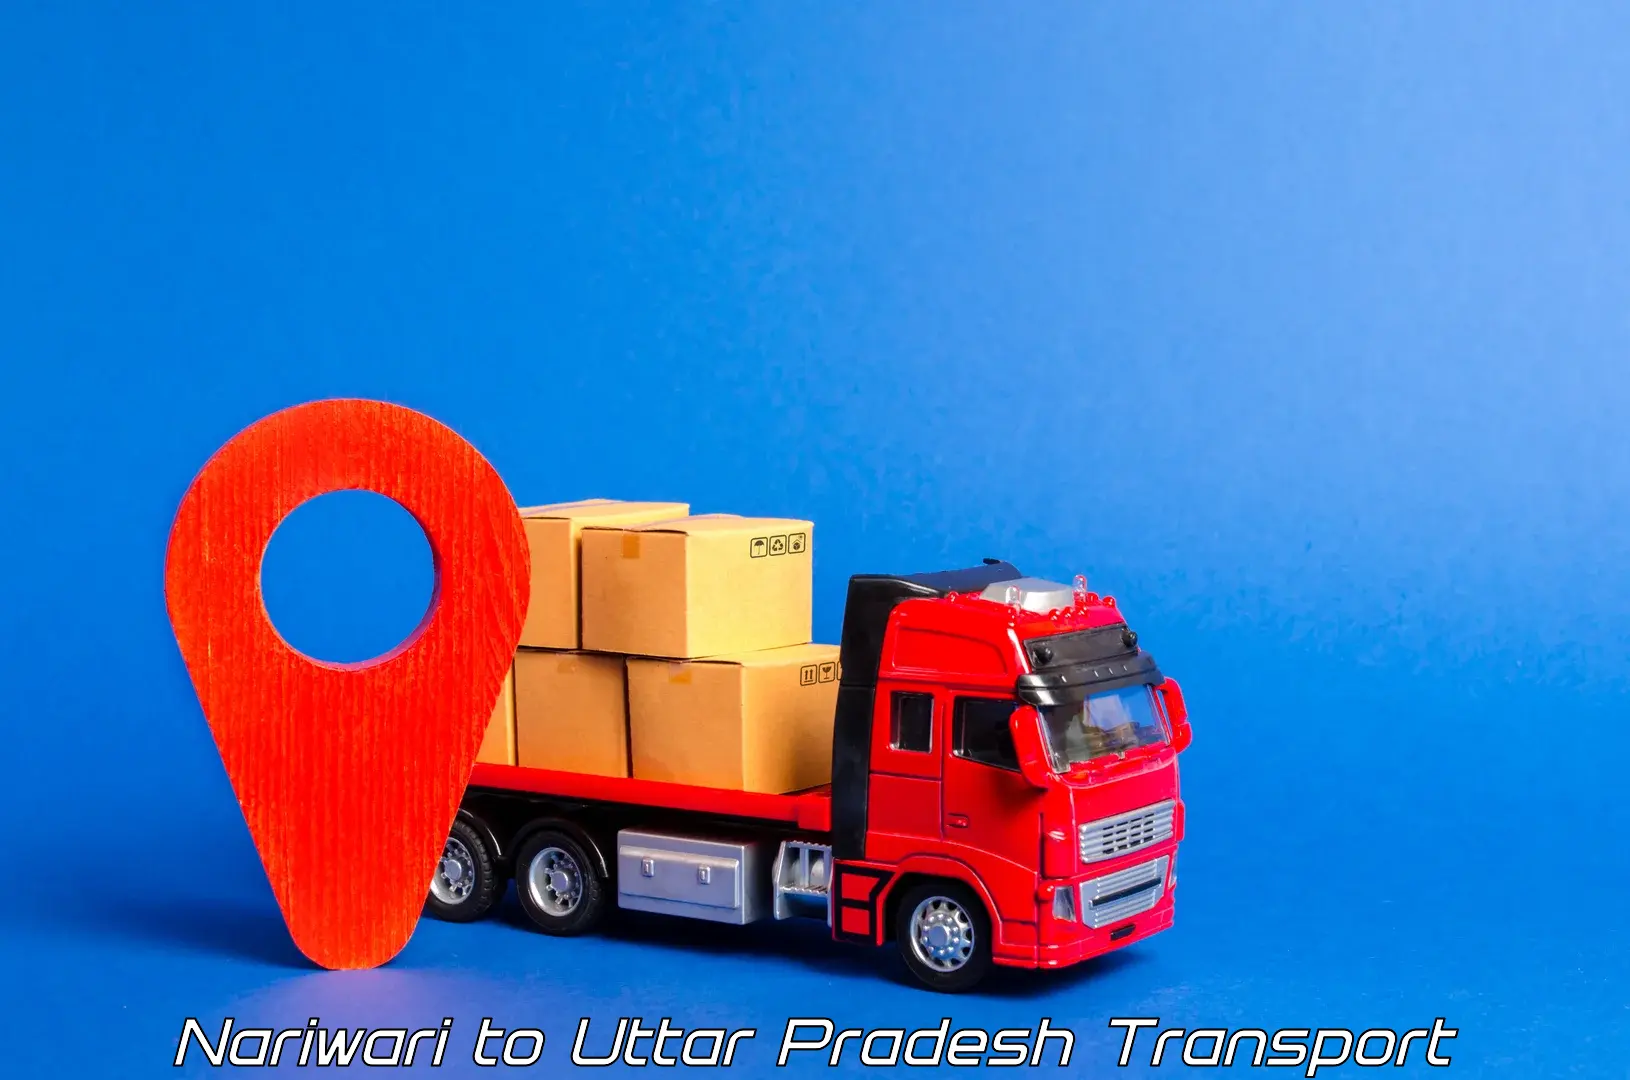 Transportation services Nariwari to Agra